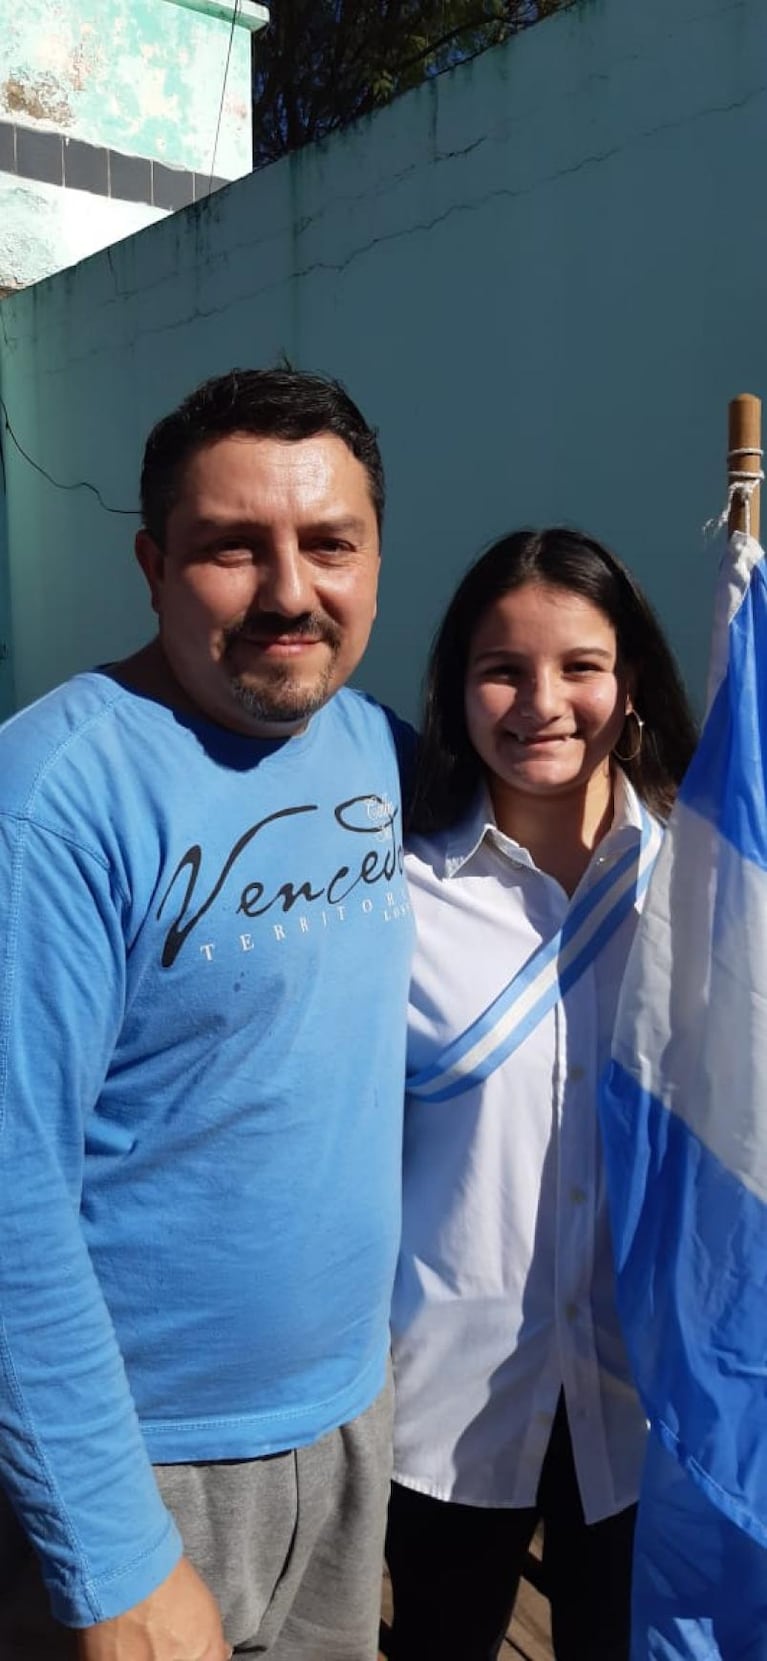 Por la cuarentena, nunca pudo llevar la bandera: su familia hizo el acto en su casa